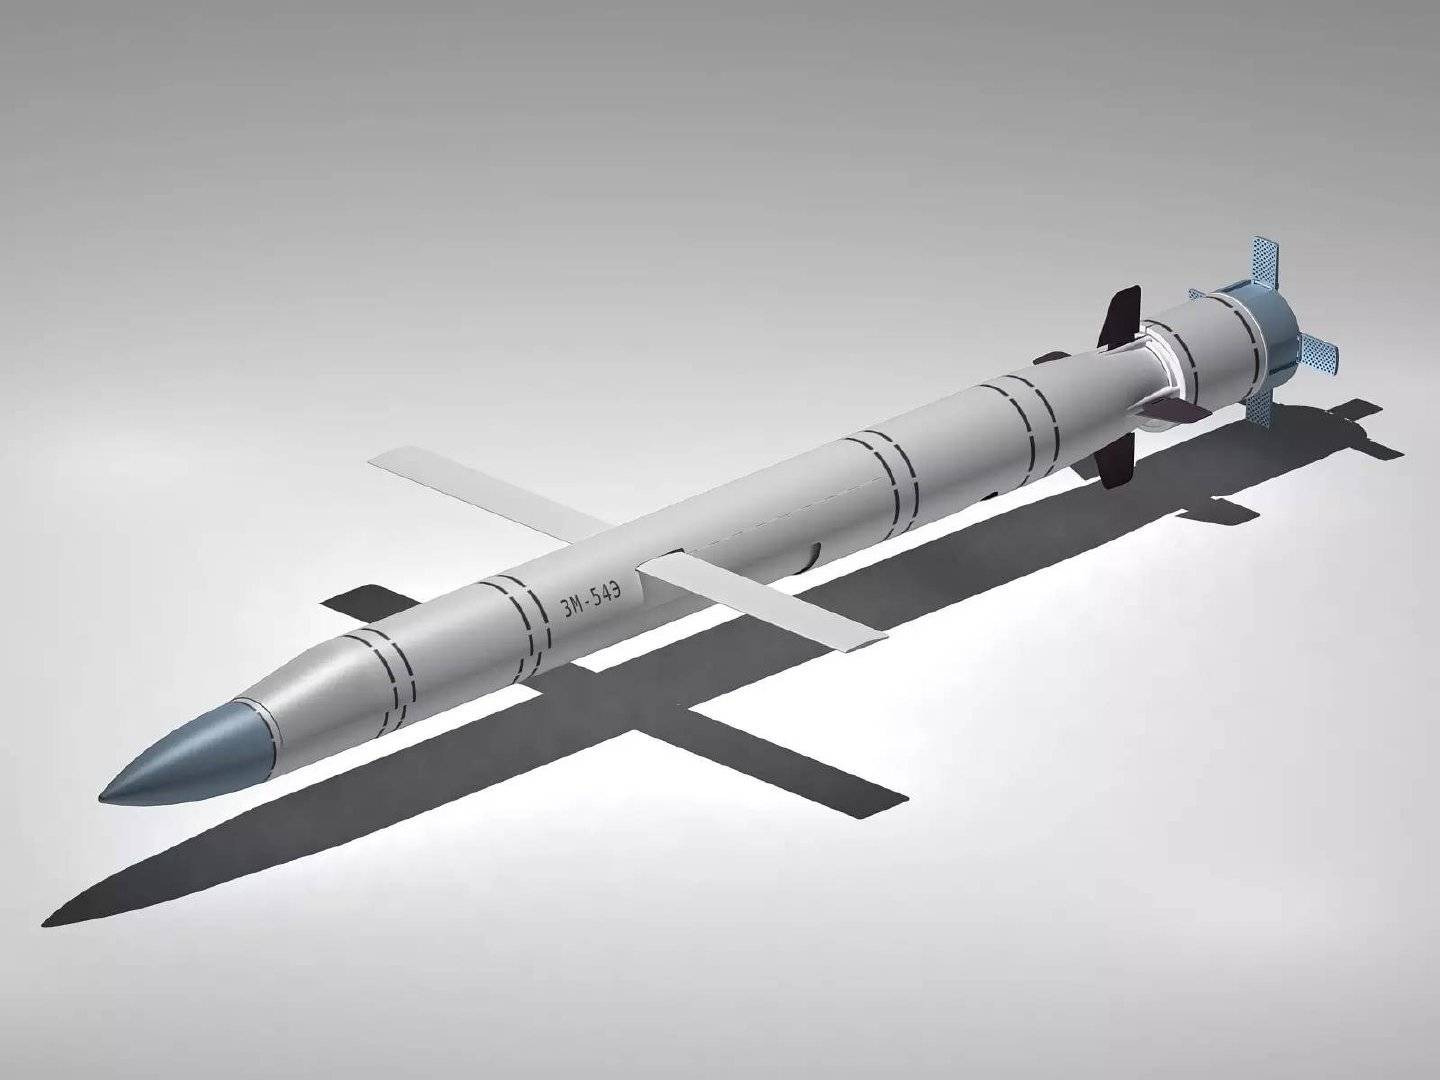 原创俄专家爆料口径巡航导弹比战斧长3米可多飞行500公里